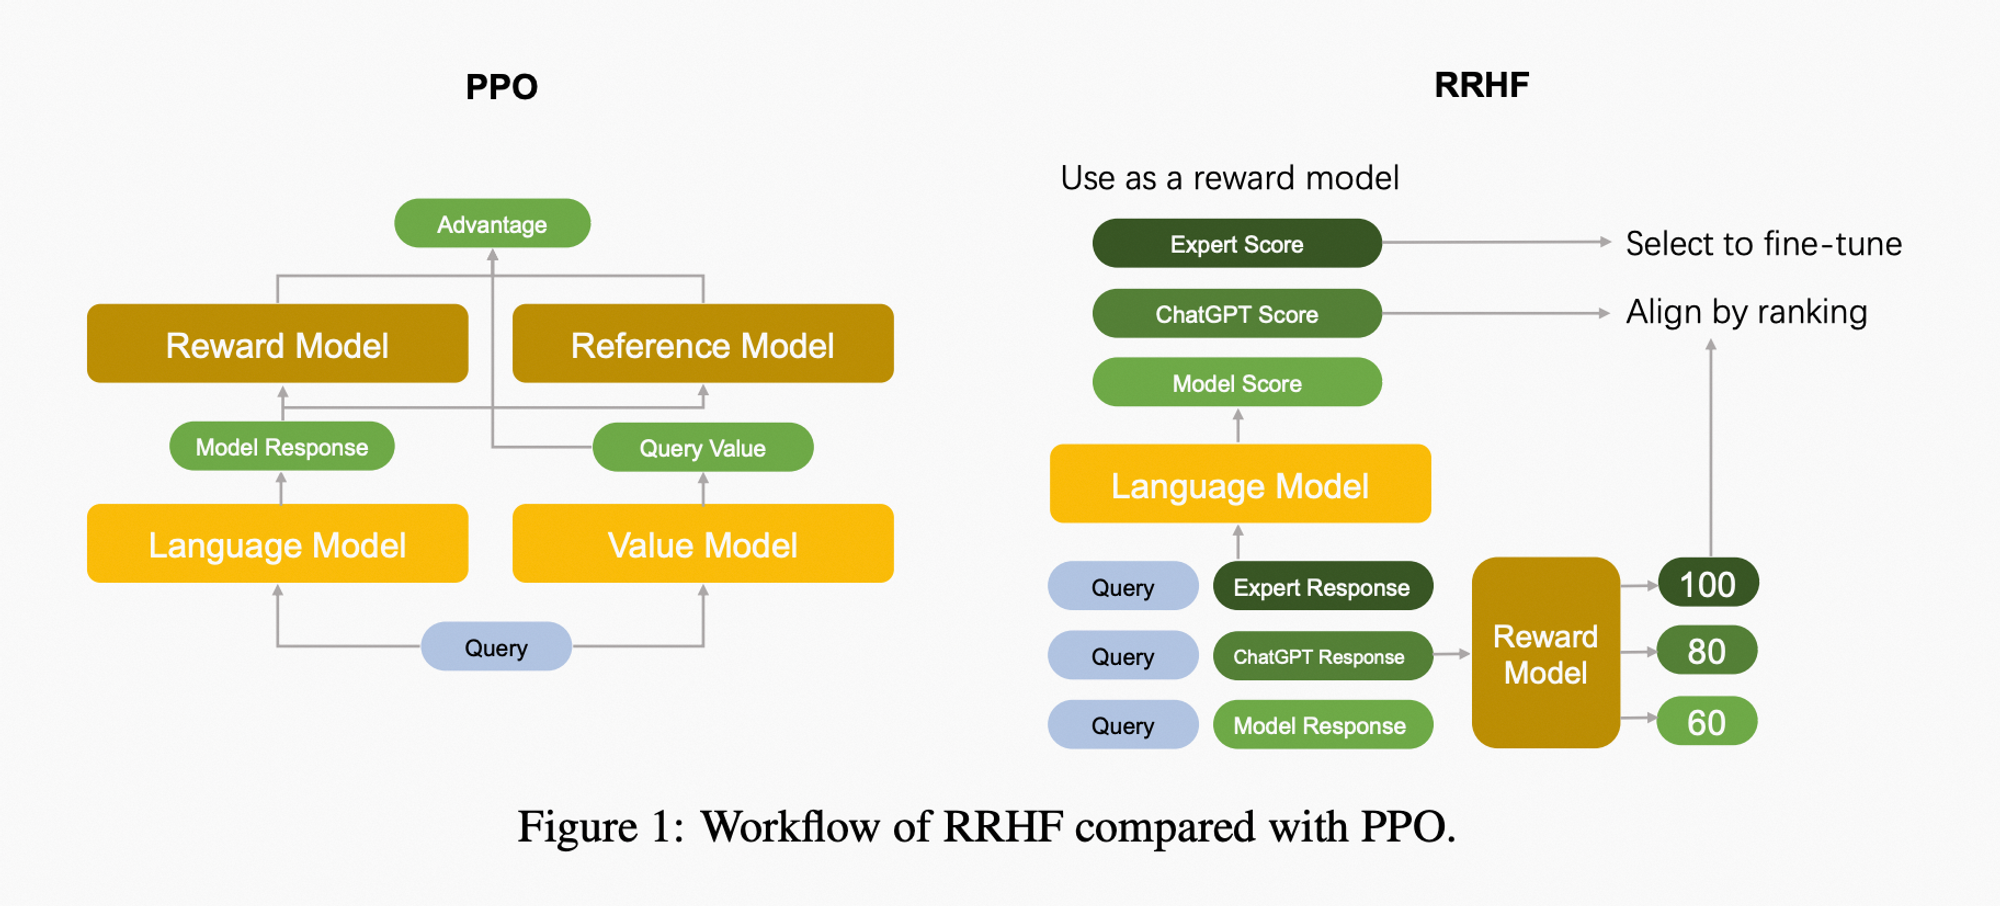 왼쪽이 PPO, 우측이 RRHF
PPO가 LM 외에 3종류의 더 많은 모델을 강화학습 Proxy로 사용하지만, RRHF에서는 단일 Reward Model만 사용